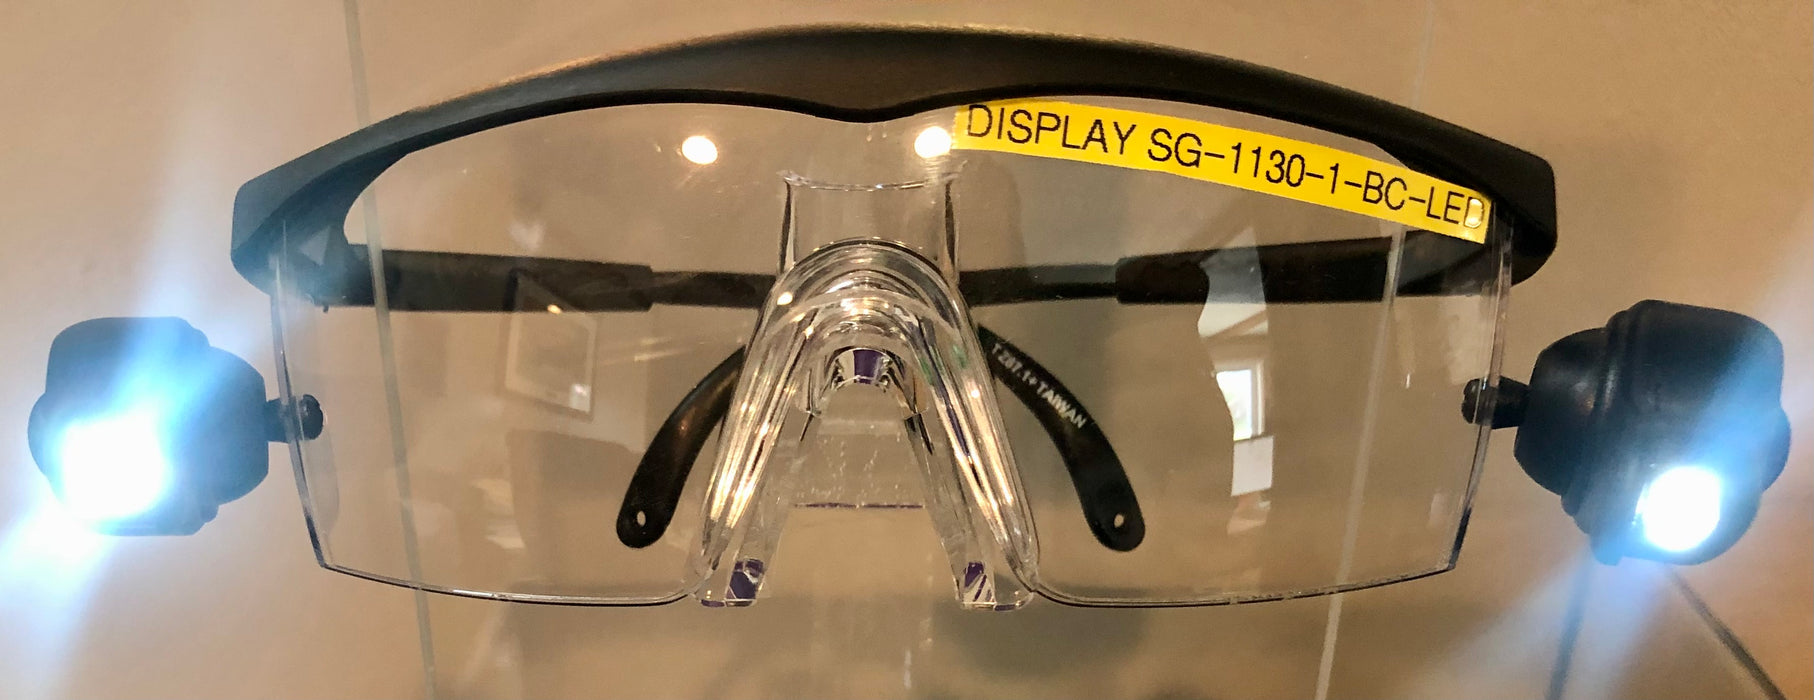 Safety Glasses- Clear Anti-Fog Lens, Black Adjustable Frame, w/ LED Lights [SG-1130-I-BC-LED]